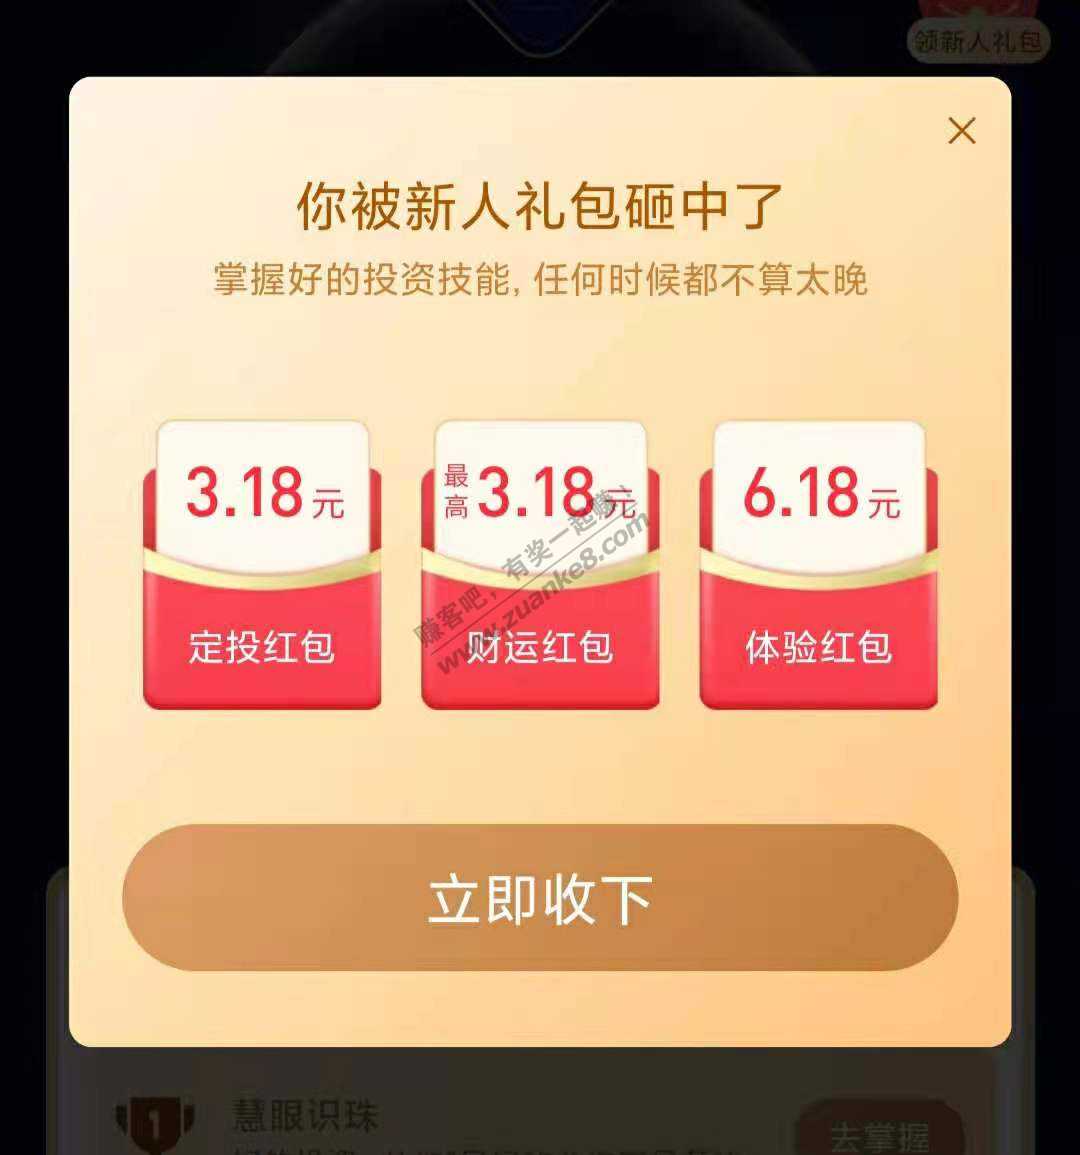 支付宝 3.18+3.18+6.18 红包-惠小助(52huixz.com)